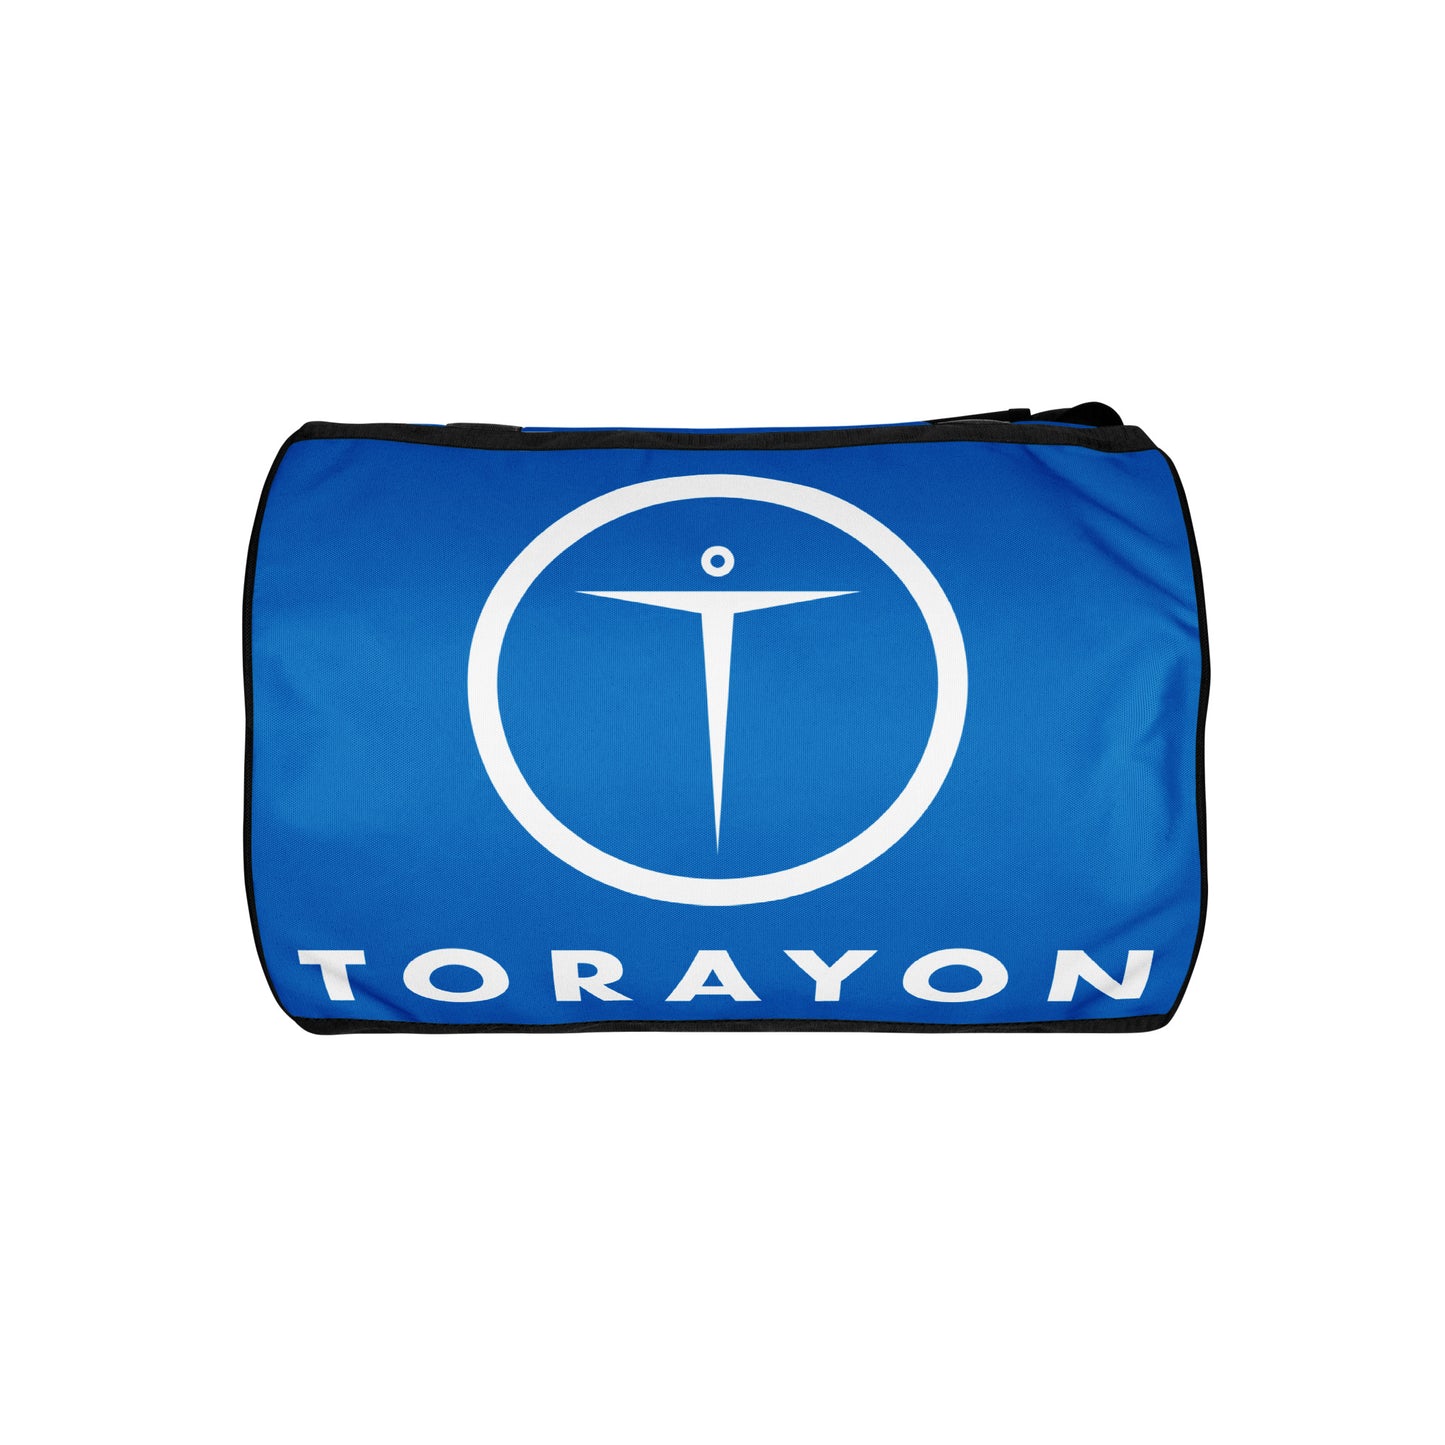 TORAYON Blue Gym bag